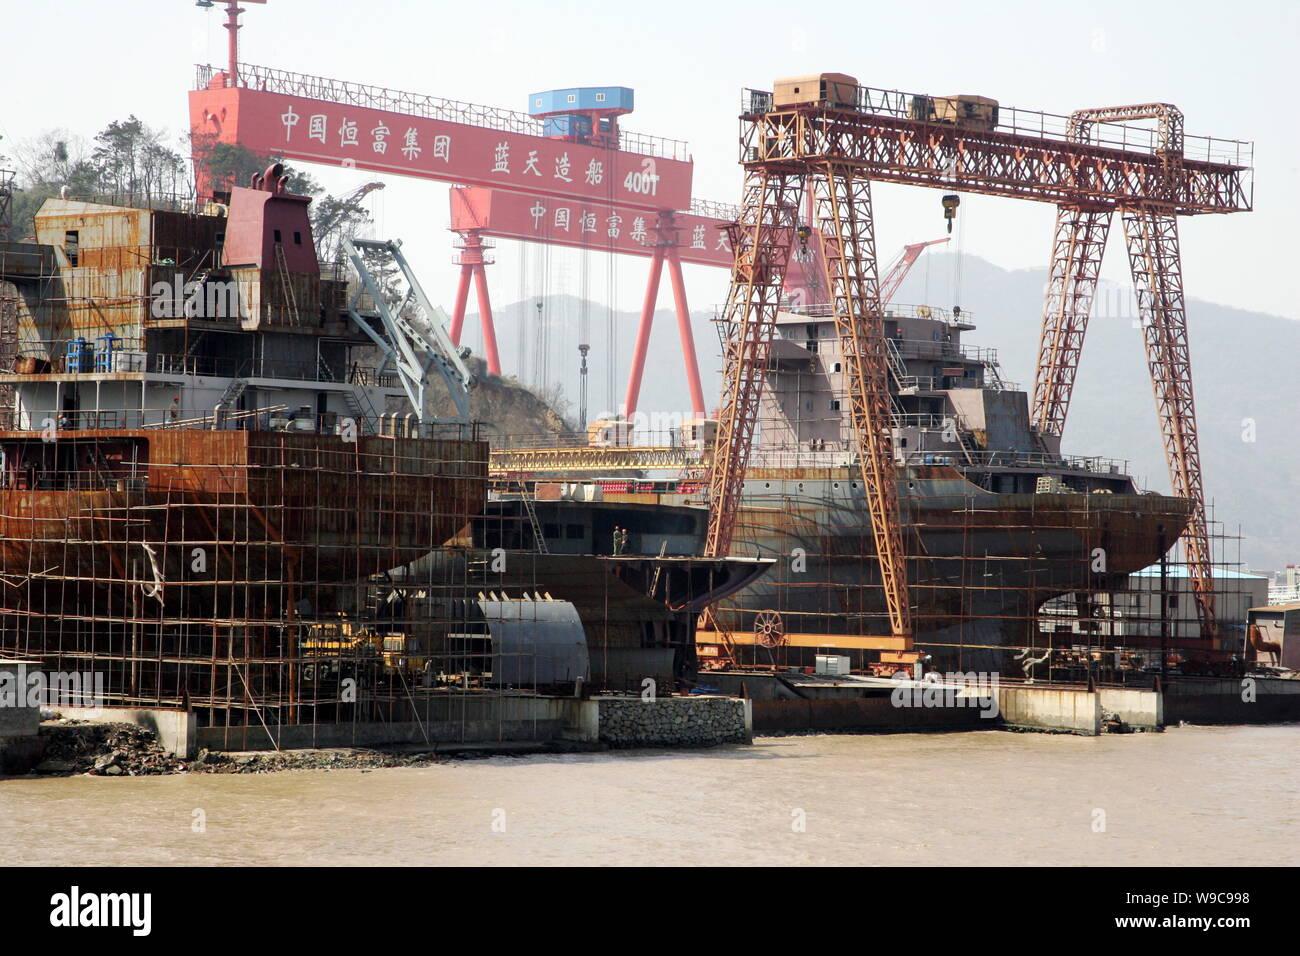 ---- Schiffe sind zu sehen auf der Werft von Ningbo Beilun Blue Sky Shipbuilding Co., Ltd. in Ningbo City, East China Zhejiang provinz, 14 gebaut Stockfoto